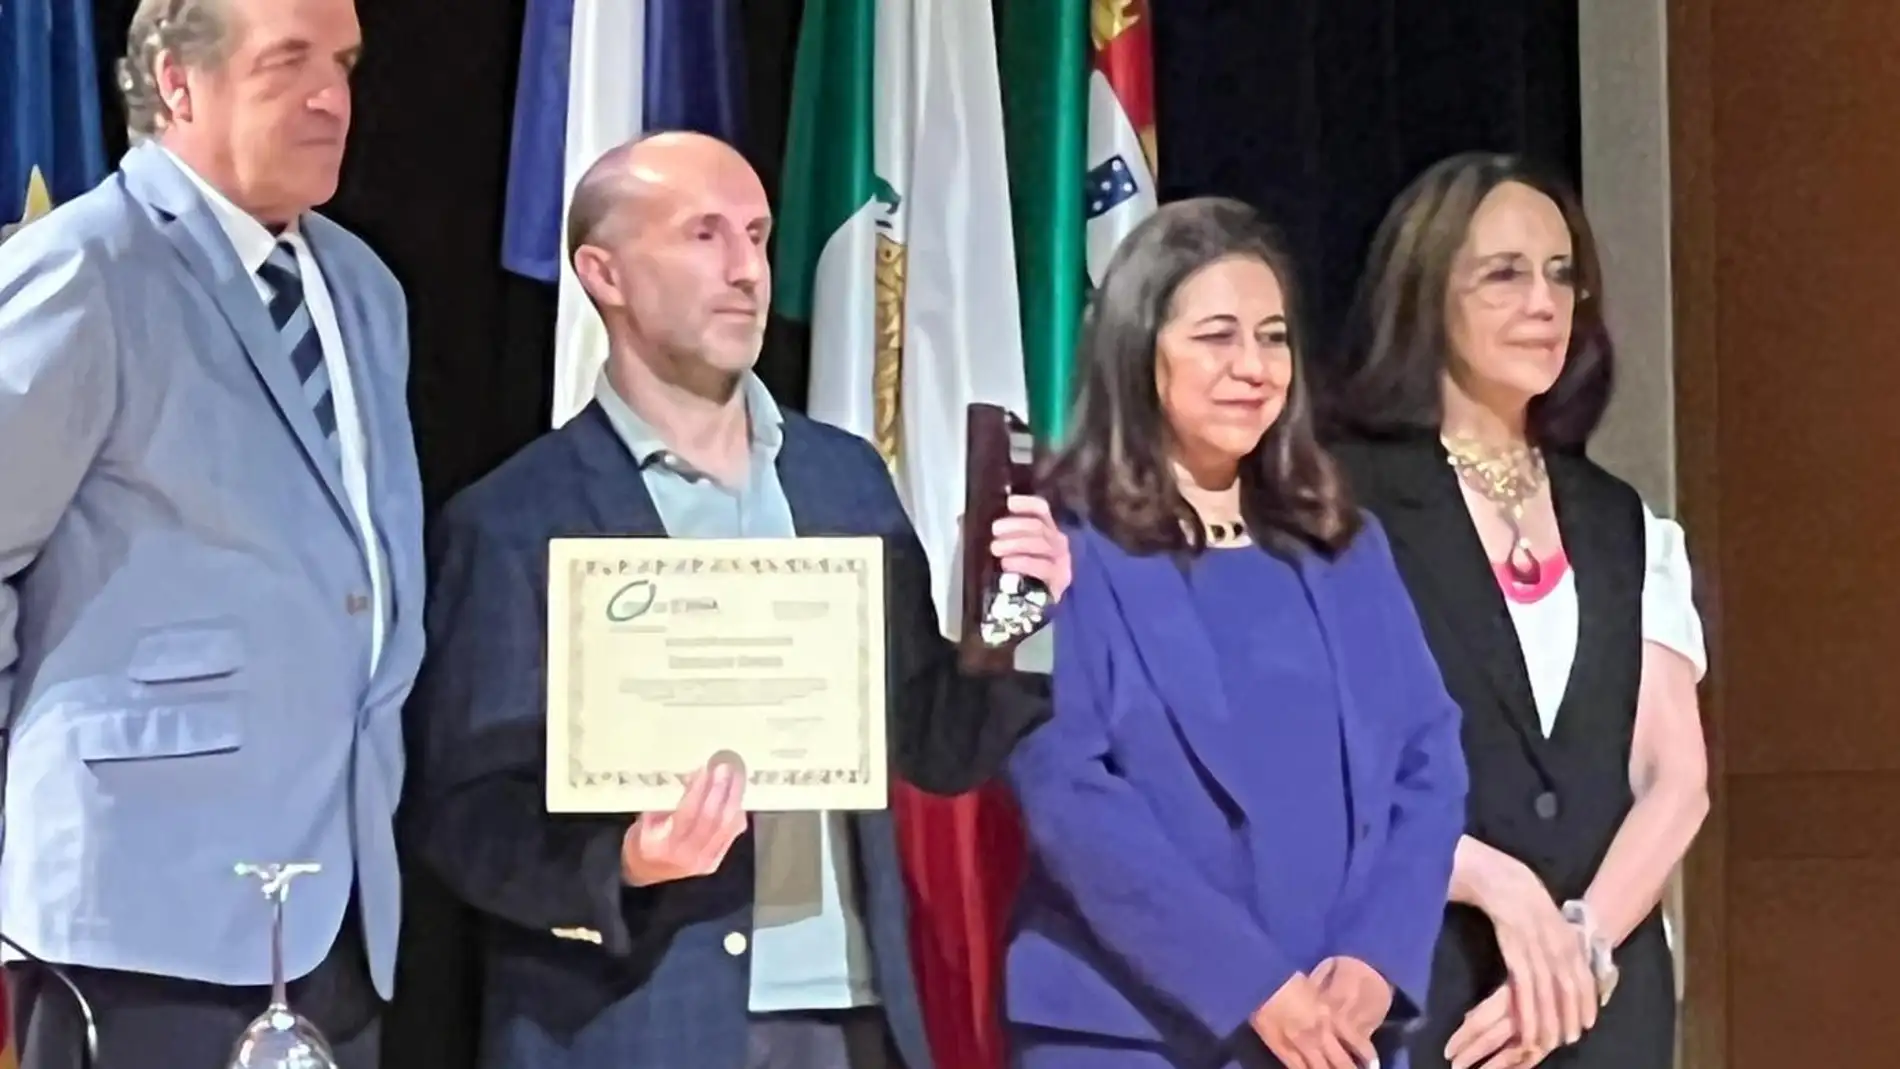 O Concello de Ourense recibe o premio “Escoba de platino”, máximo galardón estatal aos servizos de limpeza e recollida de lixo